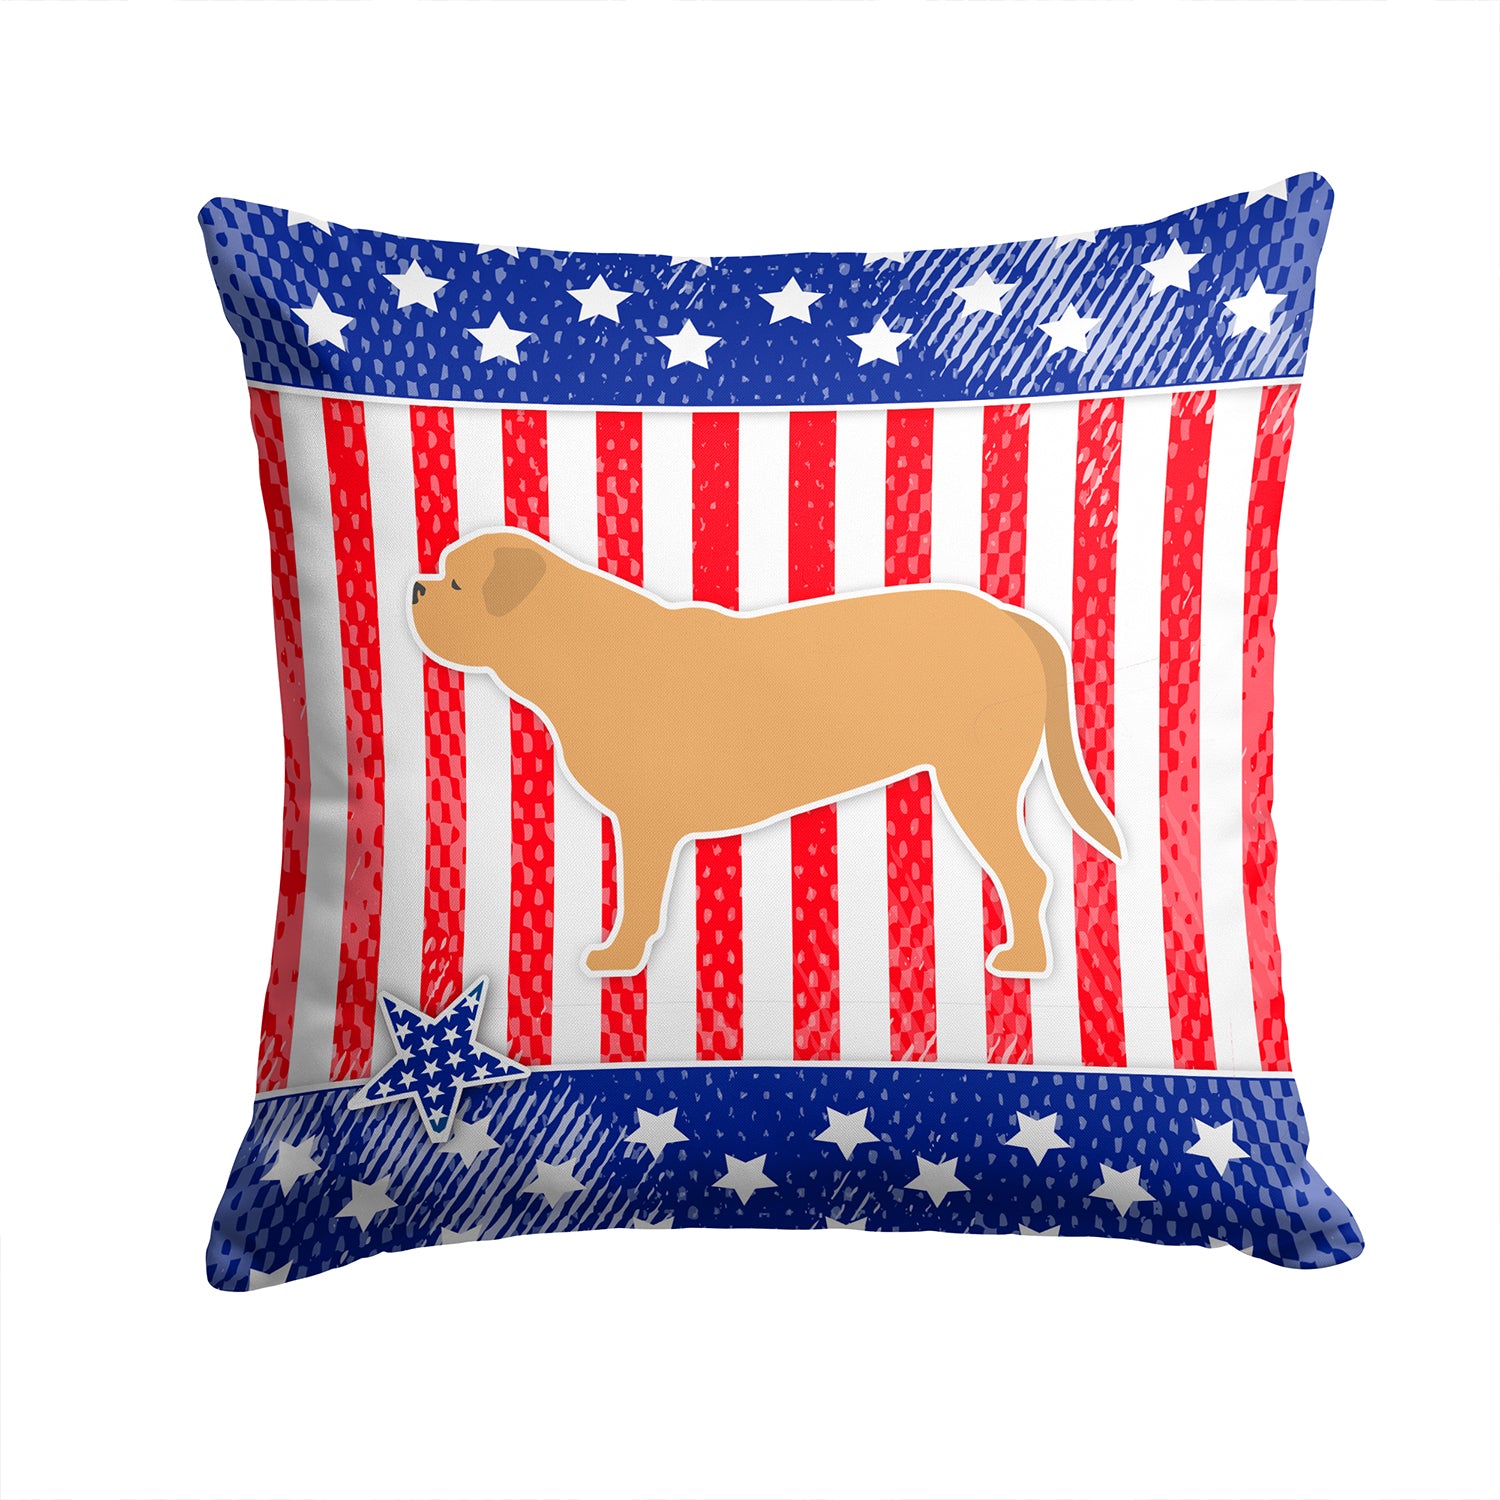 USA Patriotic Dogue de Bordeaux Fabric Decorative Pillow BB3370PW1414 - the-store.com